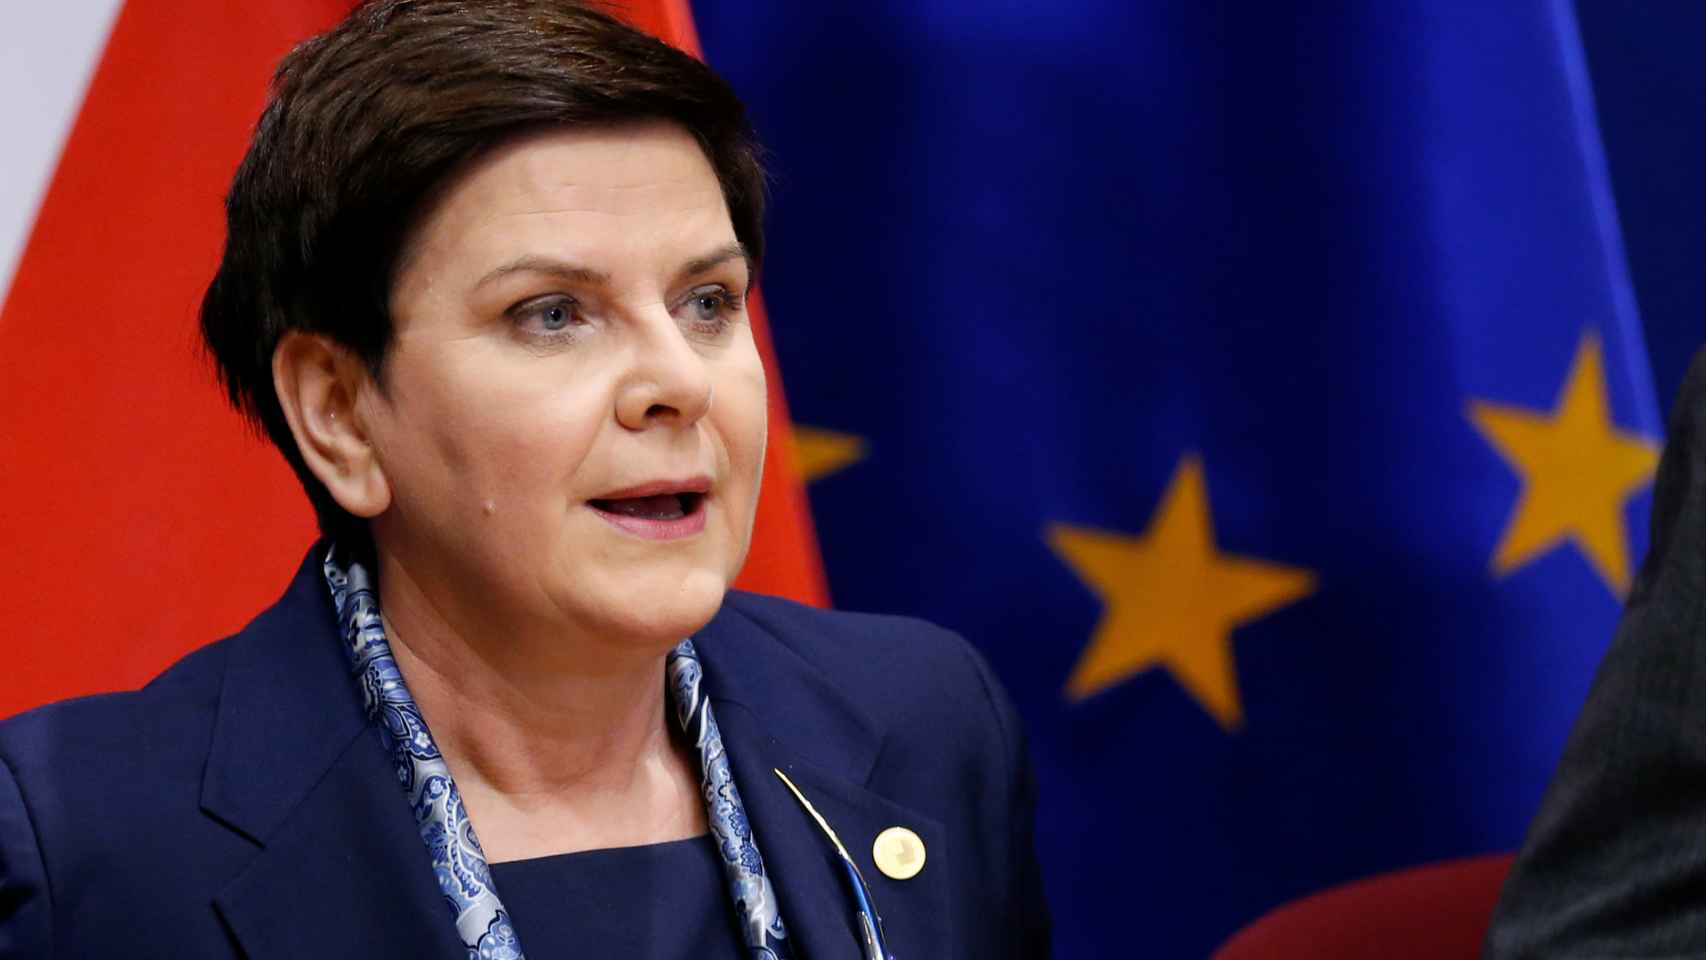 La primera ministra polaca no tiene miedo de quedarse aislada